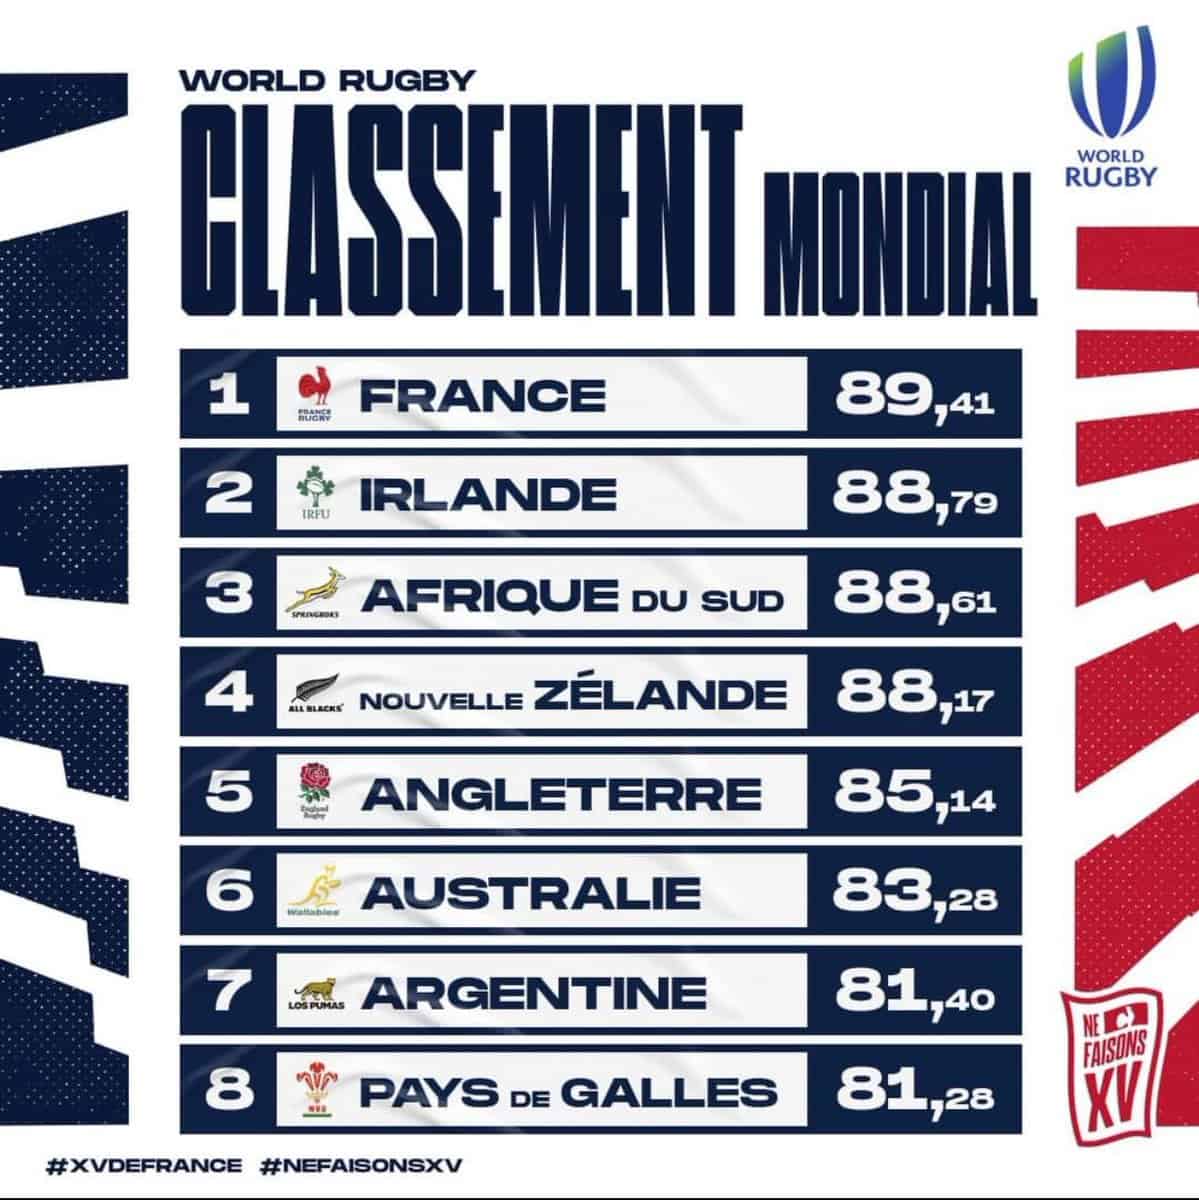 Rugby: La France première nation mondiale pour la première fois de son histoire